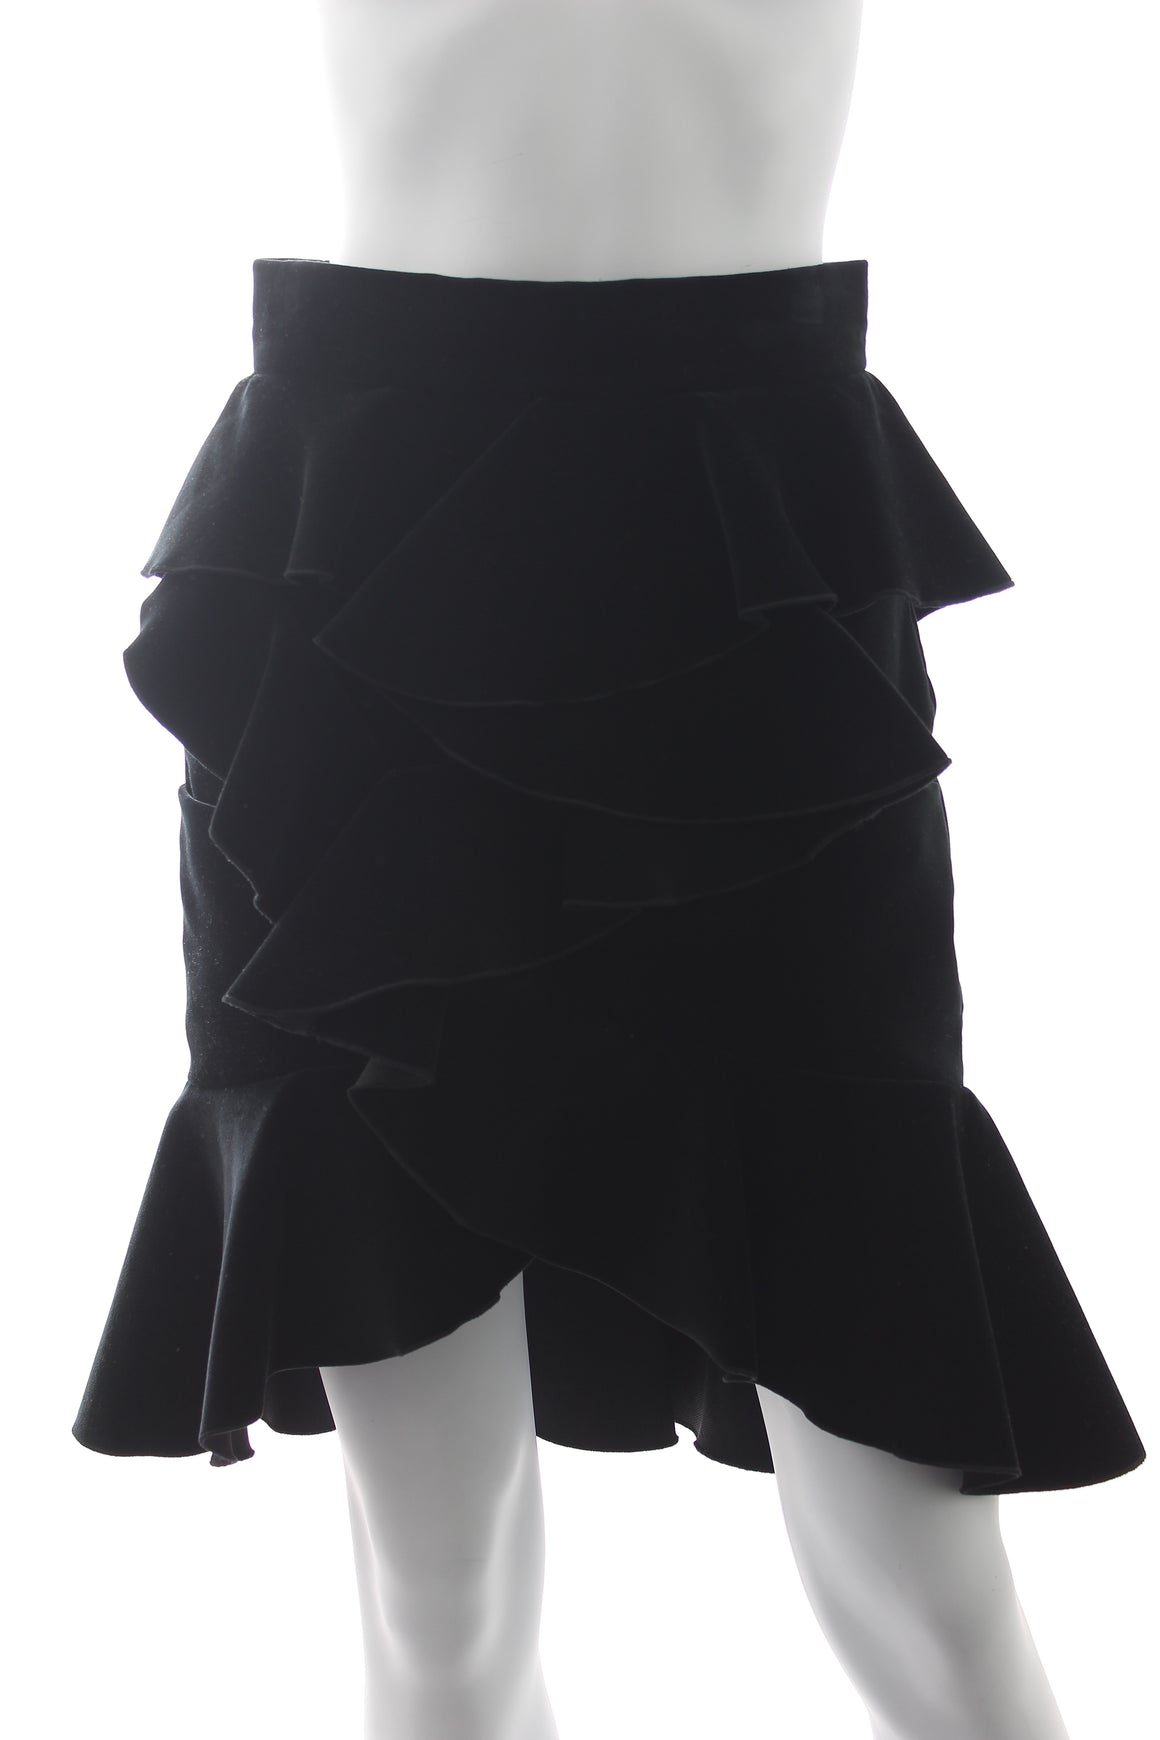 Balmain Ruffled Velvet Mini Skirt